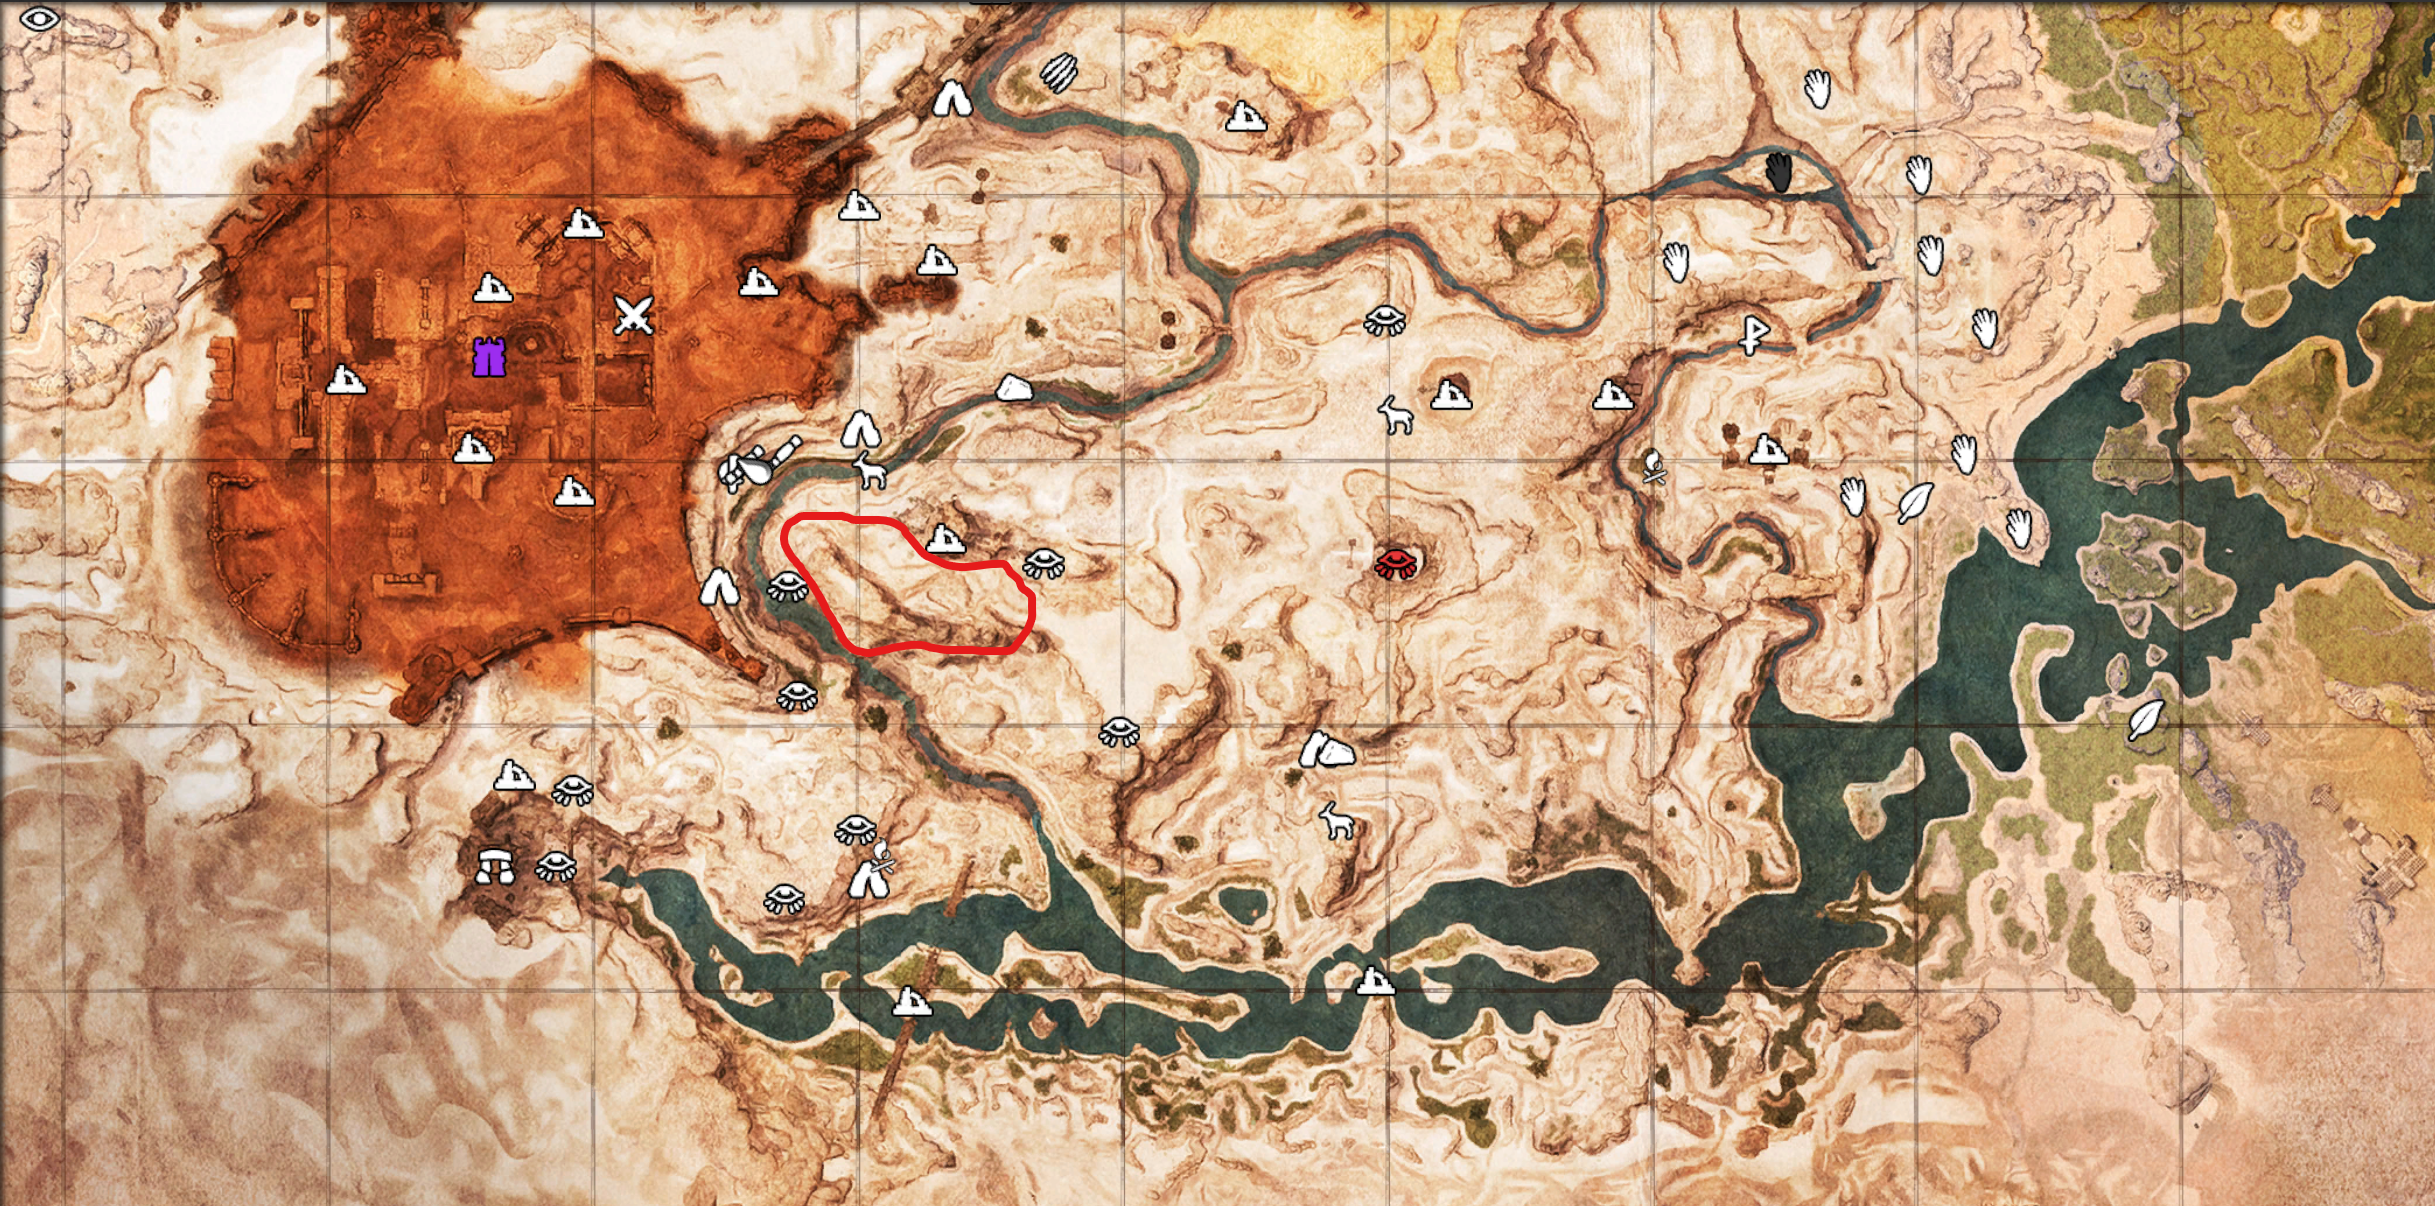 Conan exiles iron locations